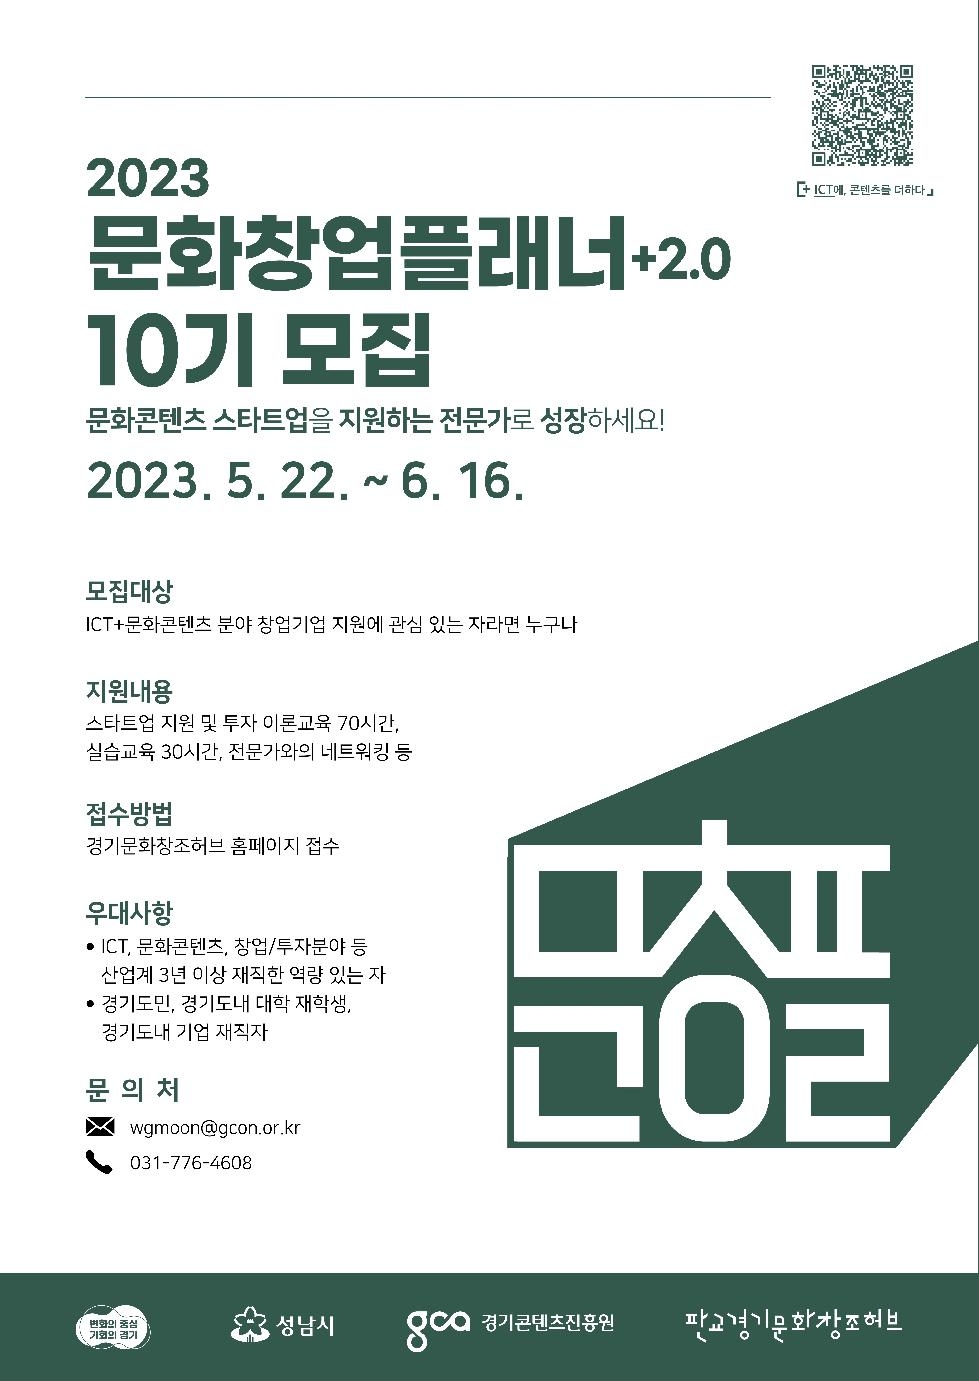 경기도, 문화콘텐츠 창업지원 전문가 양성 ‘문화창업플래너’ 10기 모집